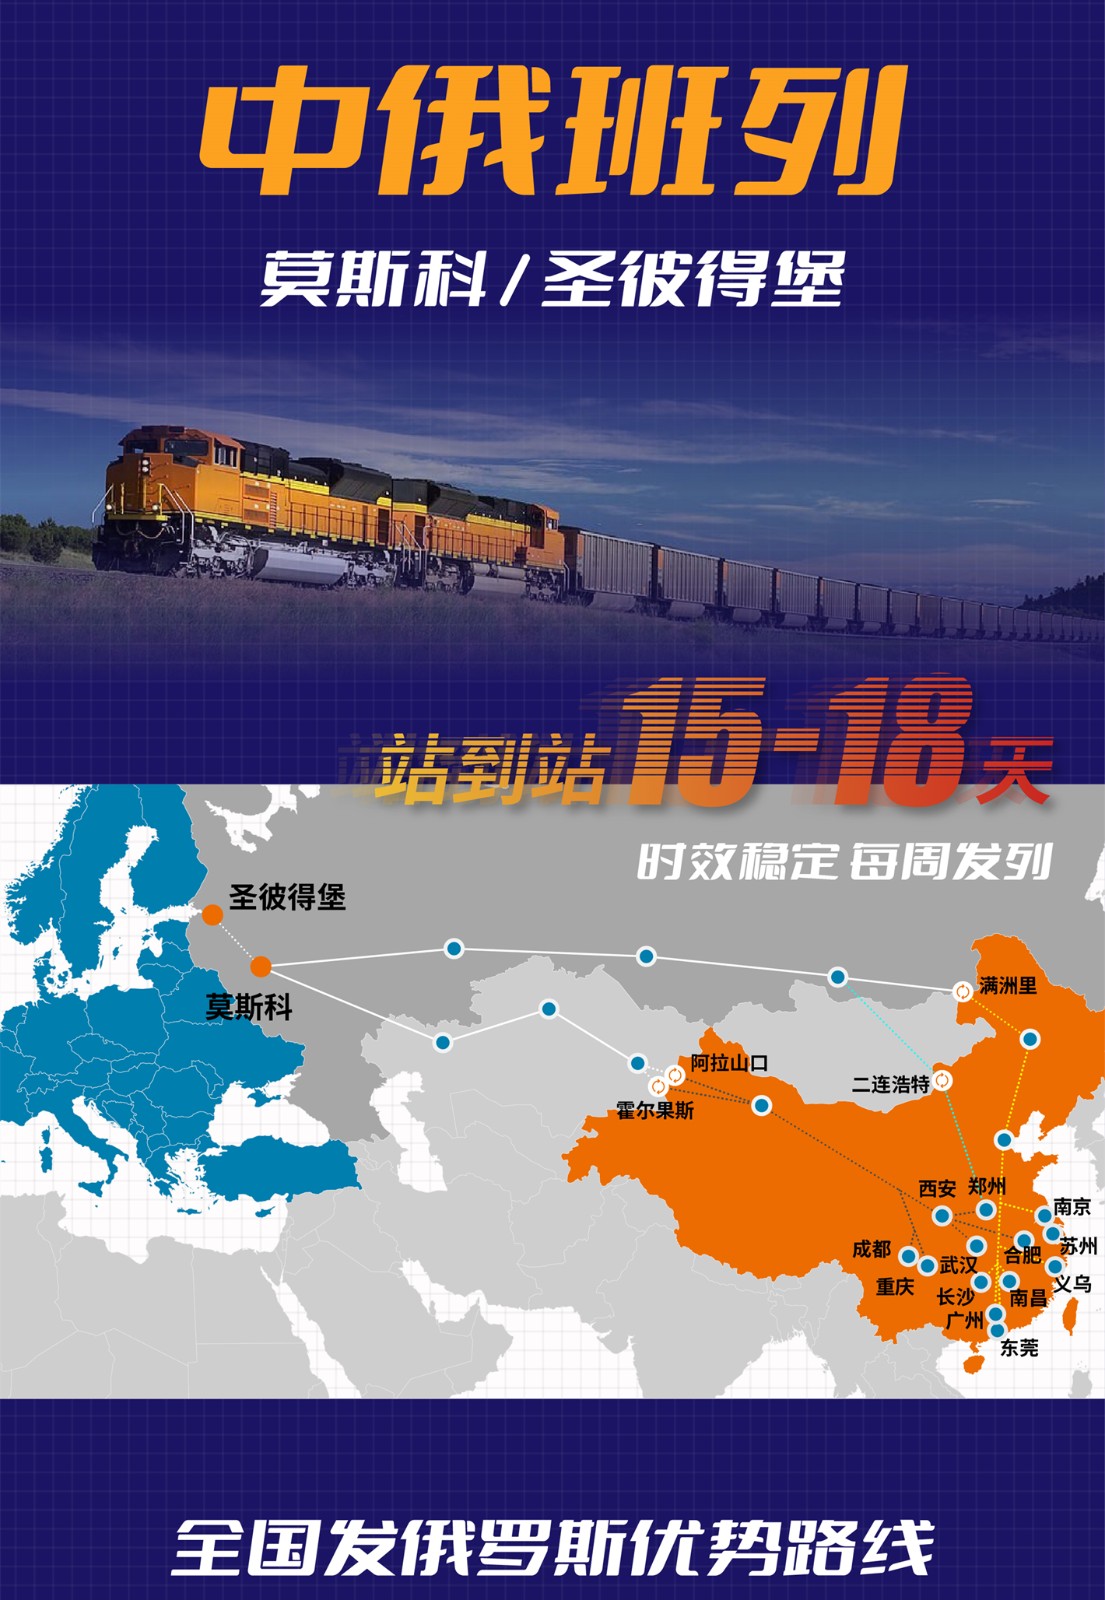 瑞狮国际/中俄专线，站到站15天